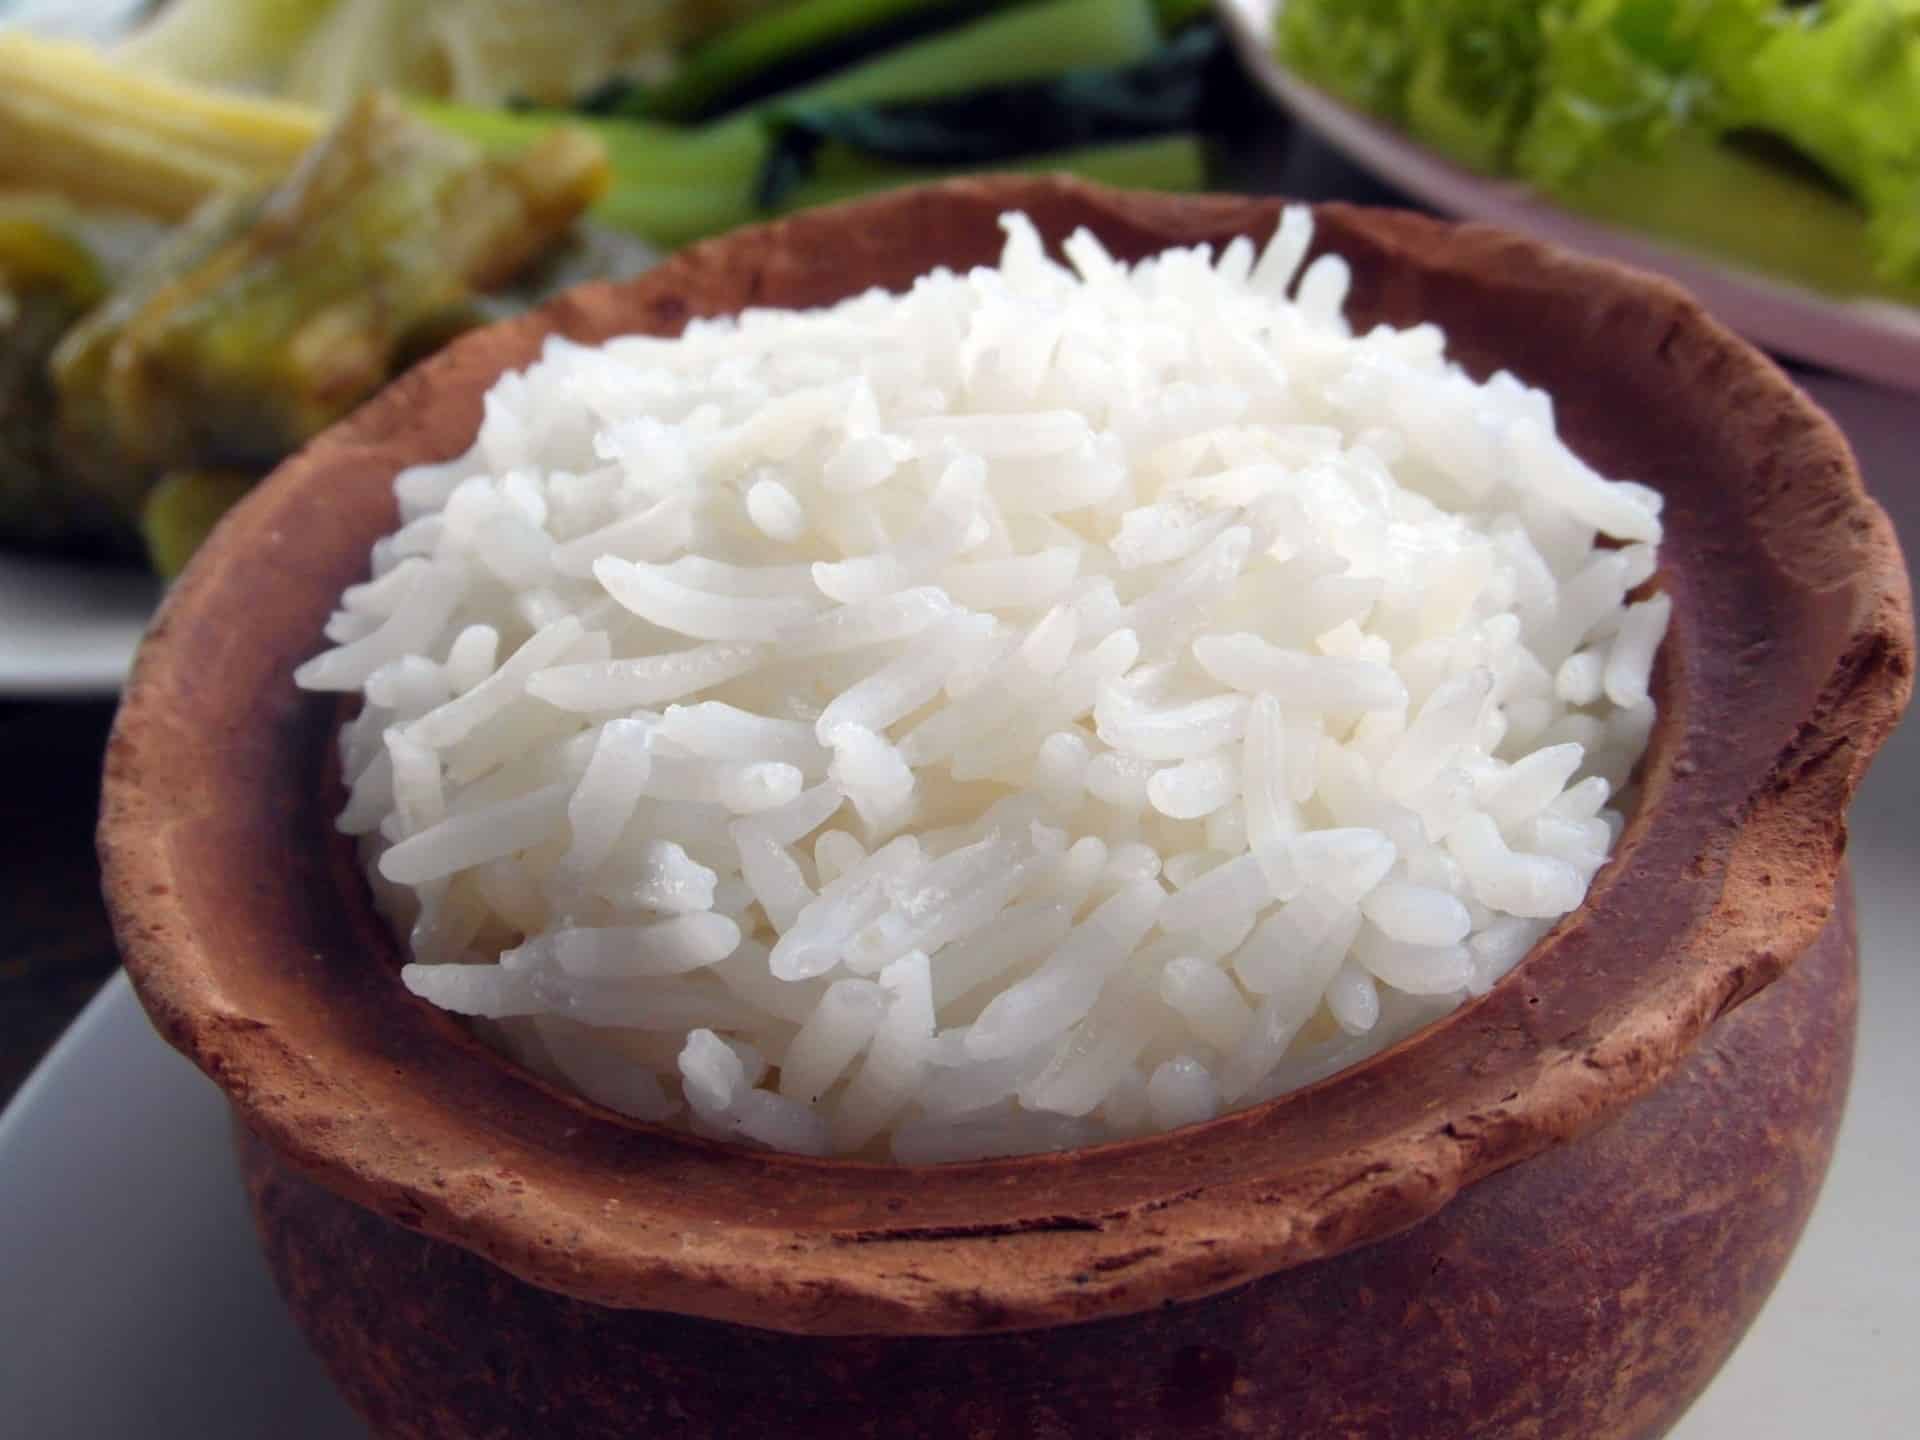 bowl of basmati rice